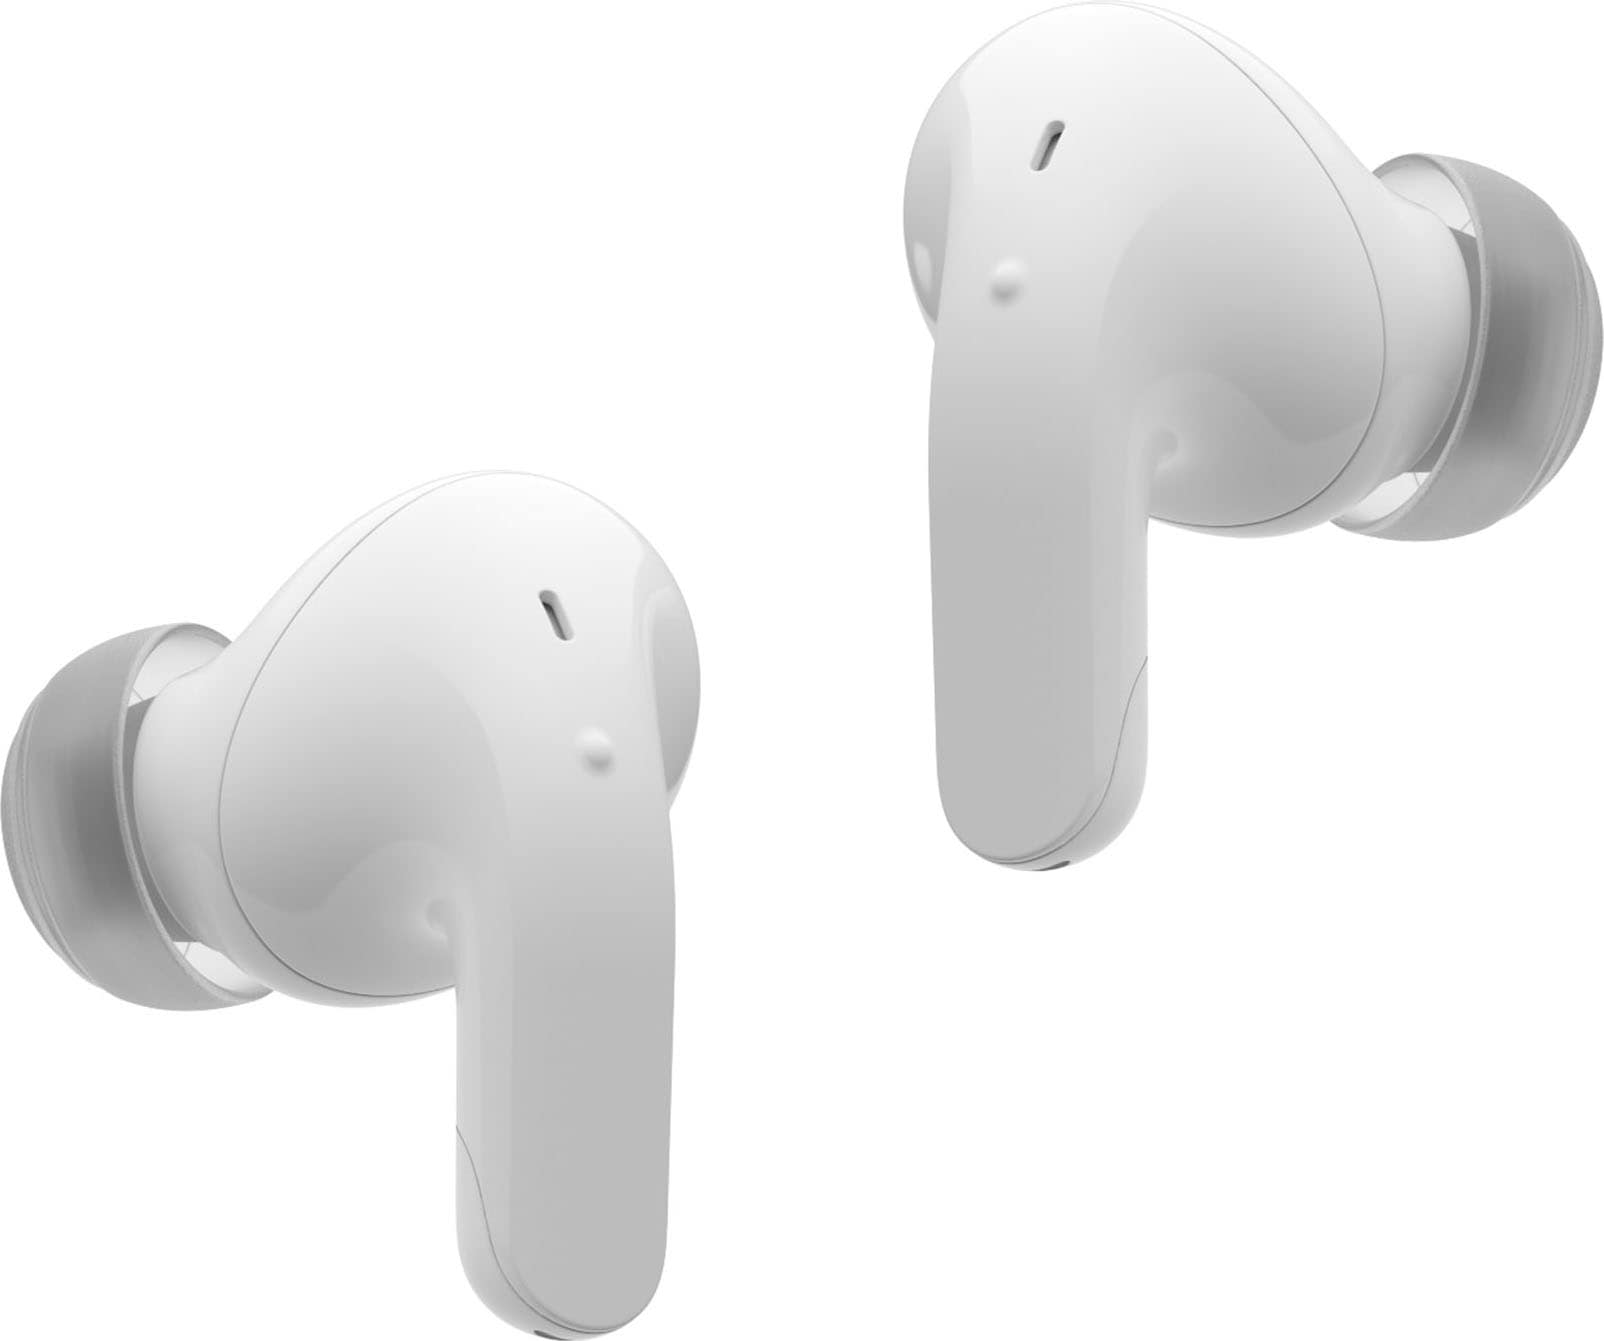 bei DT60Q« wireless LG In-Ear-Kopfhörer »TONE UNIVERSAL online Free